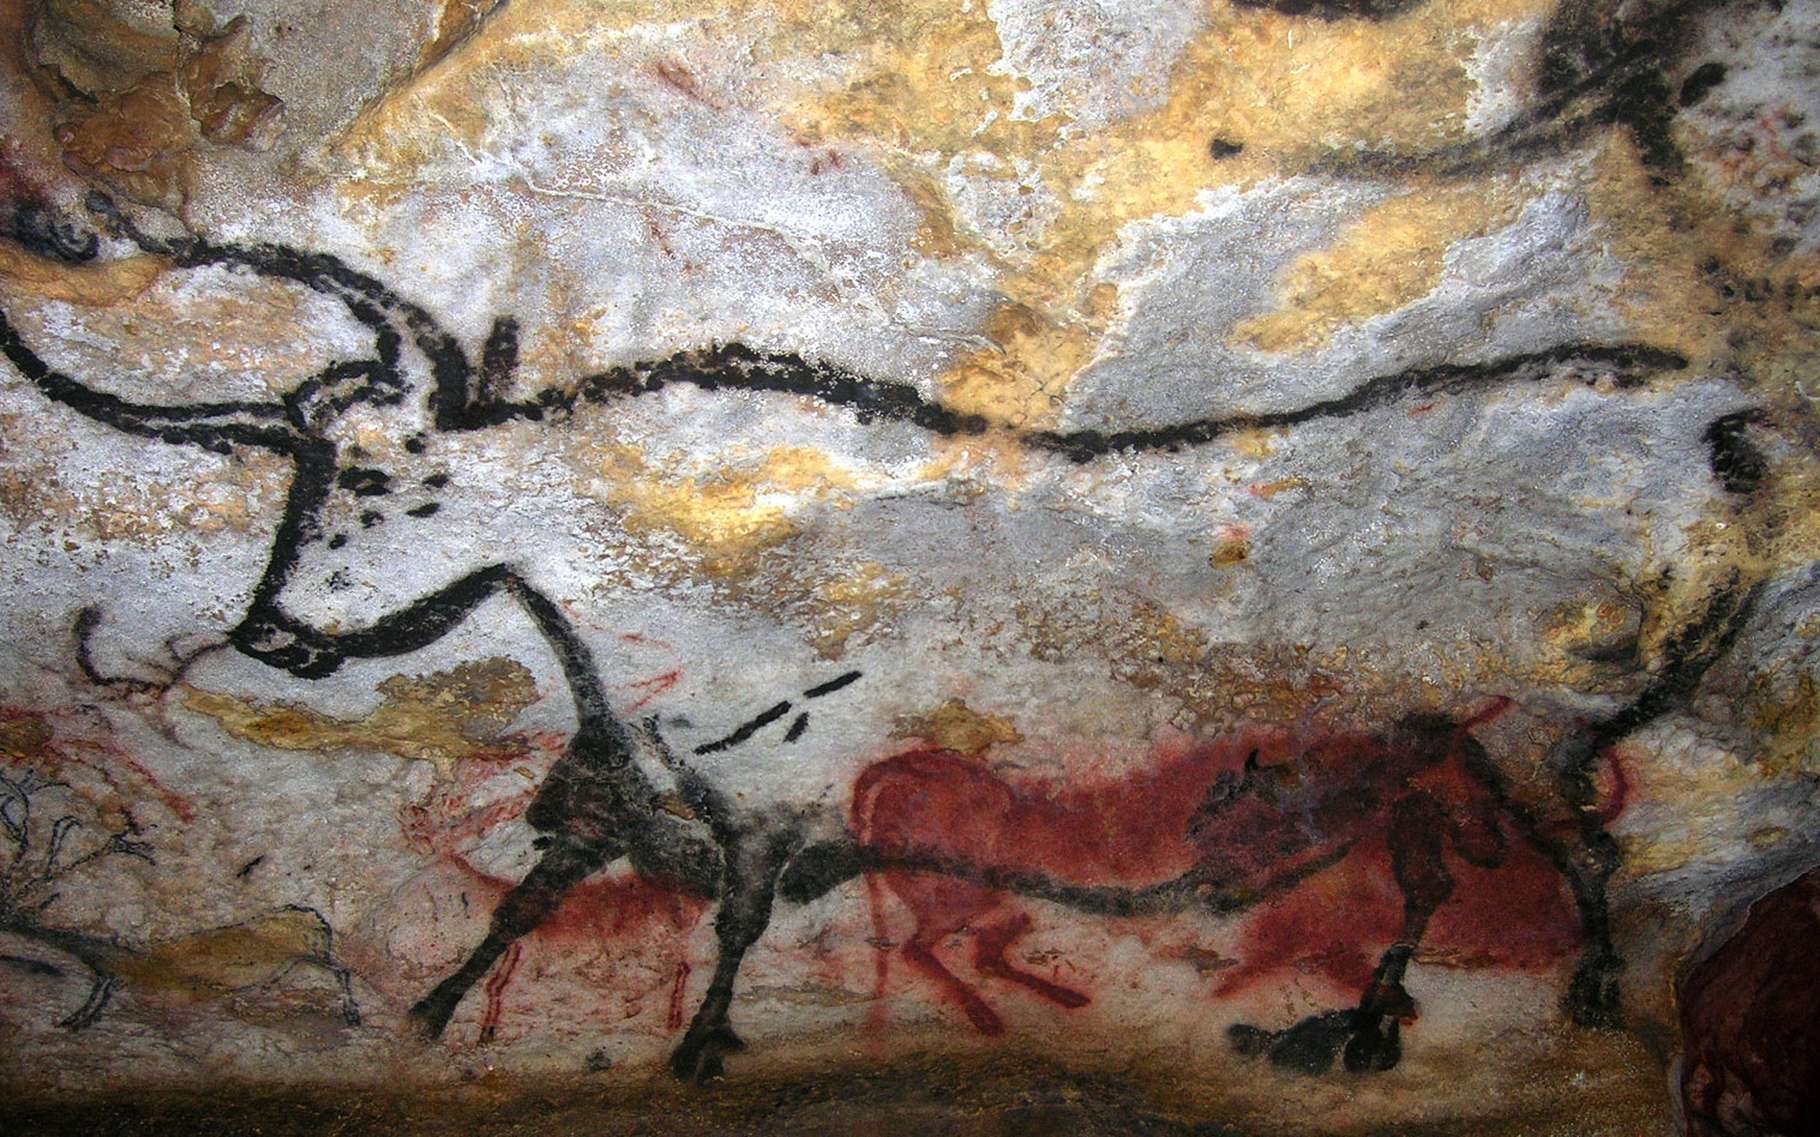 grotte de lascaux peintures